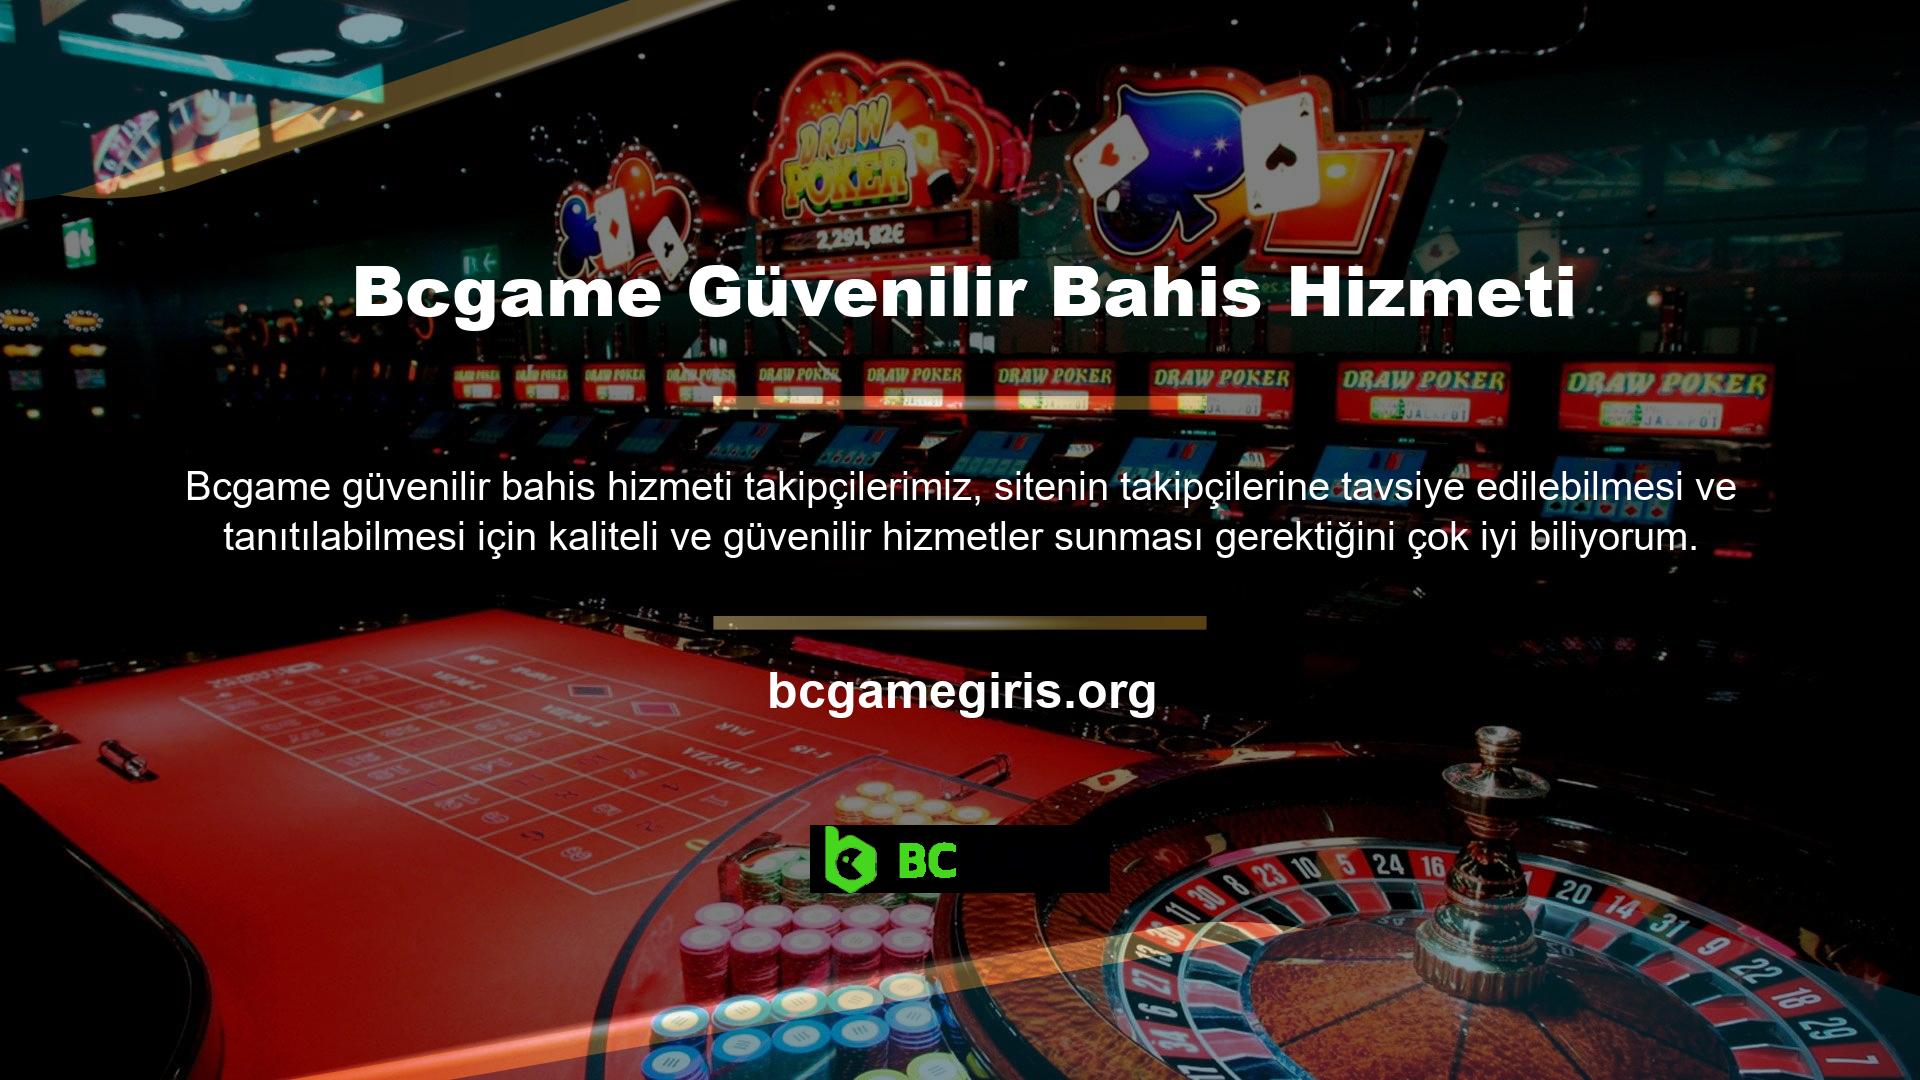 Araştırmamıza göre Bcgame sitesi şu anda mükemmel bir canlı bahis sitesidir